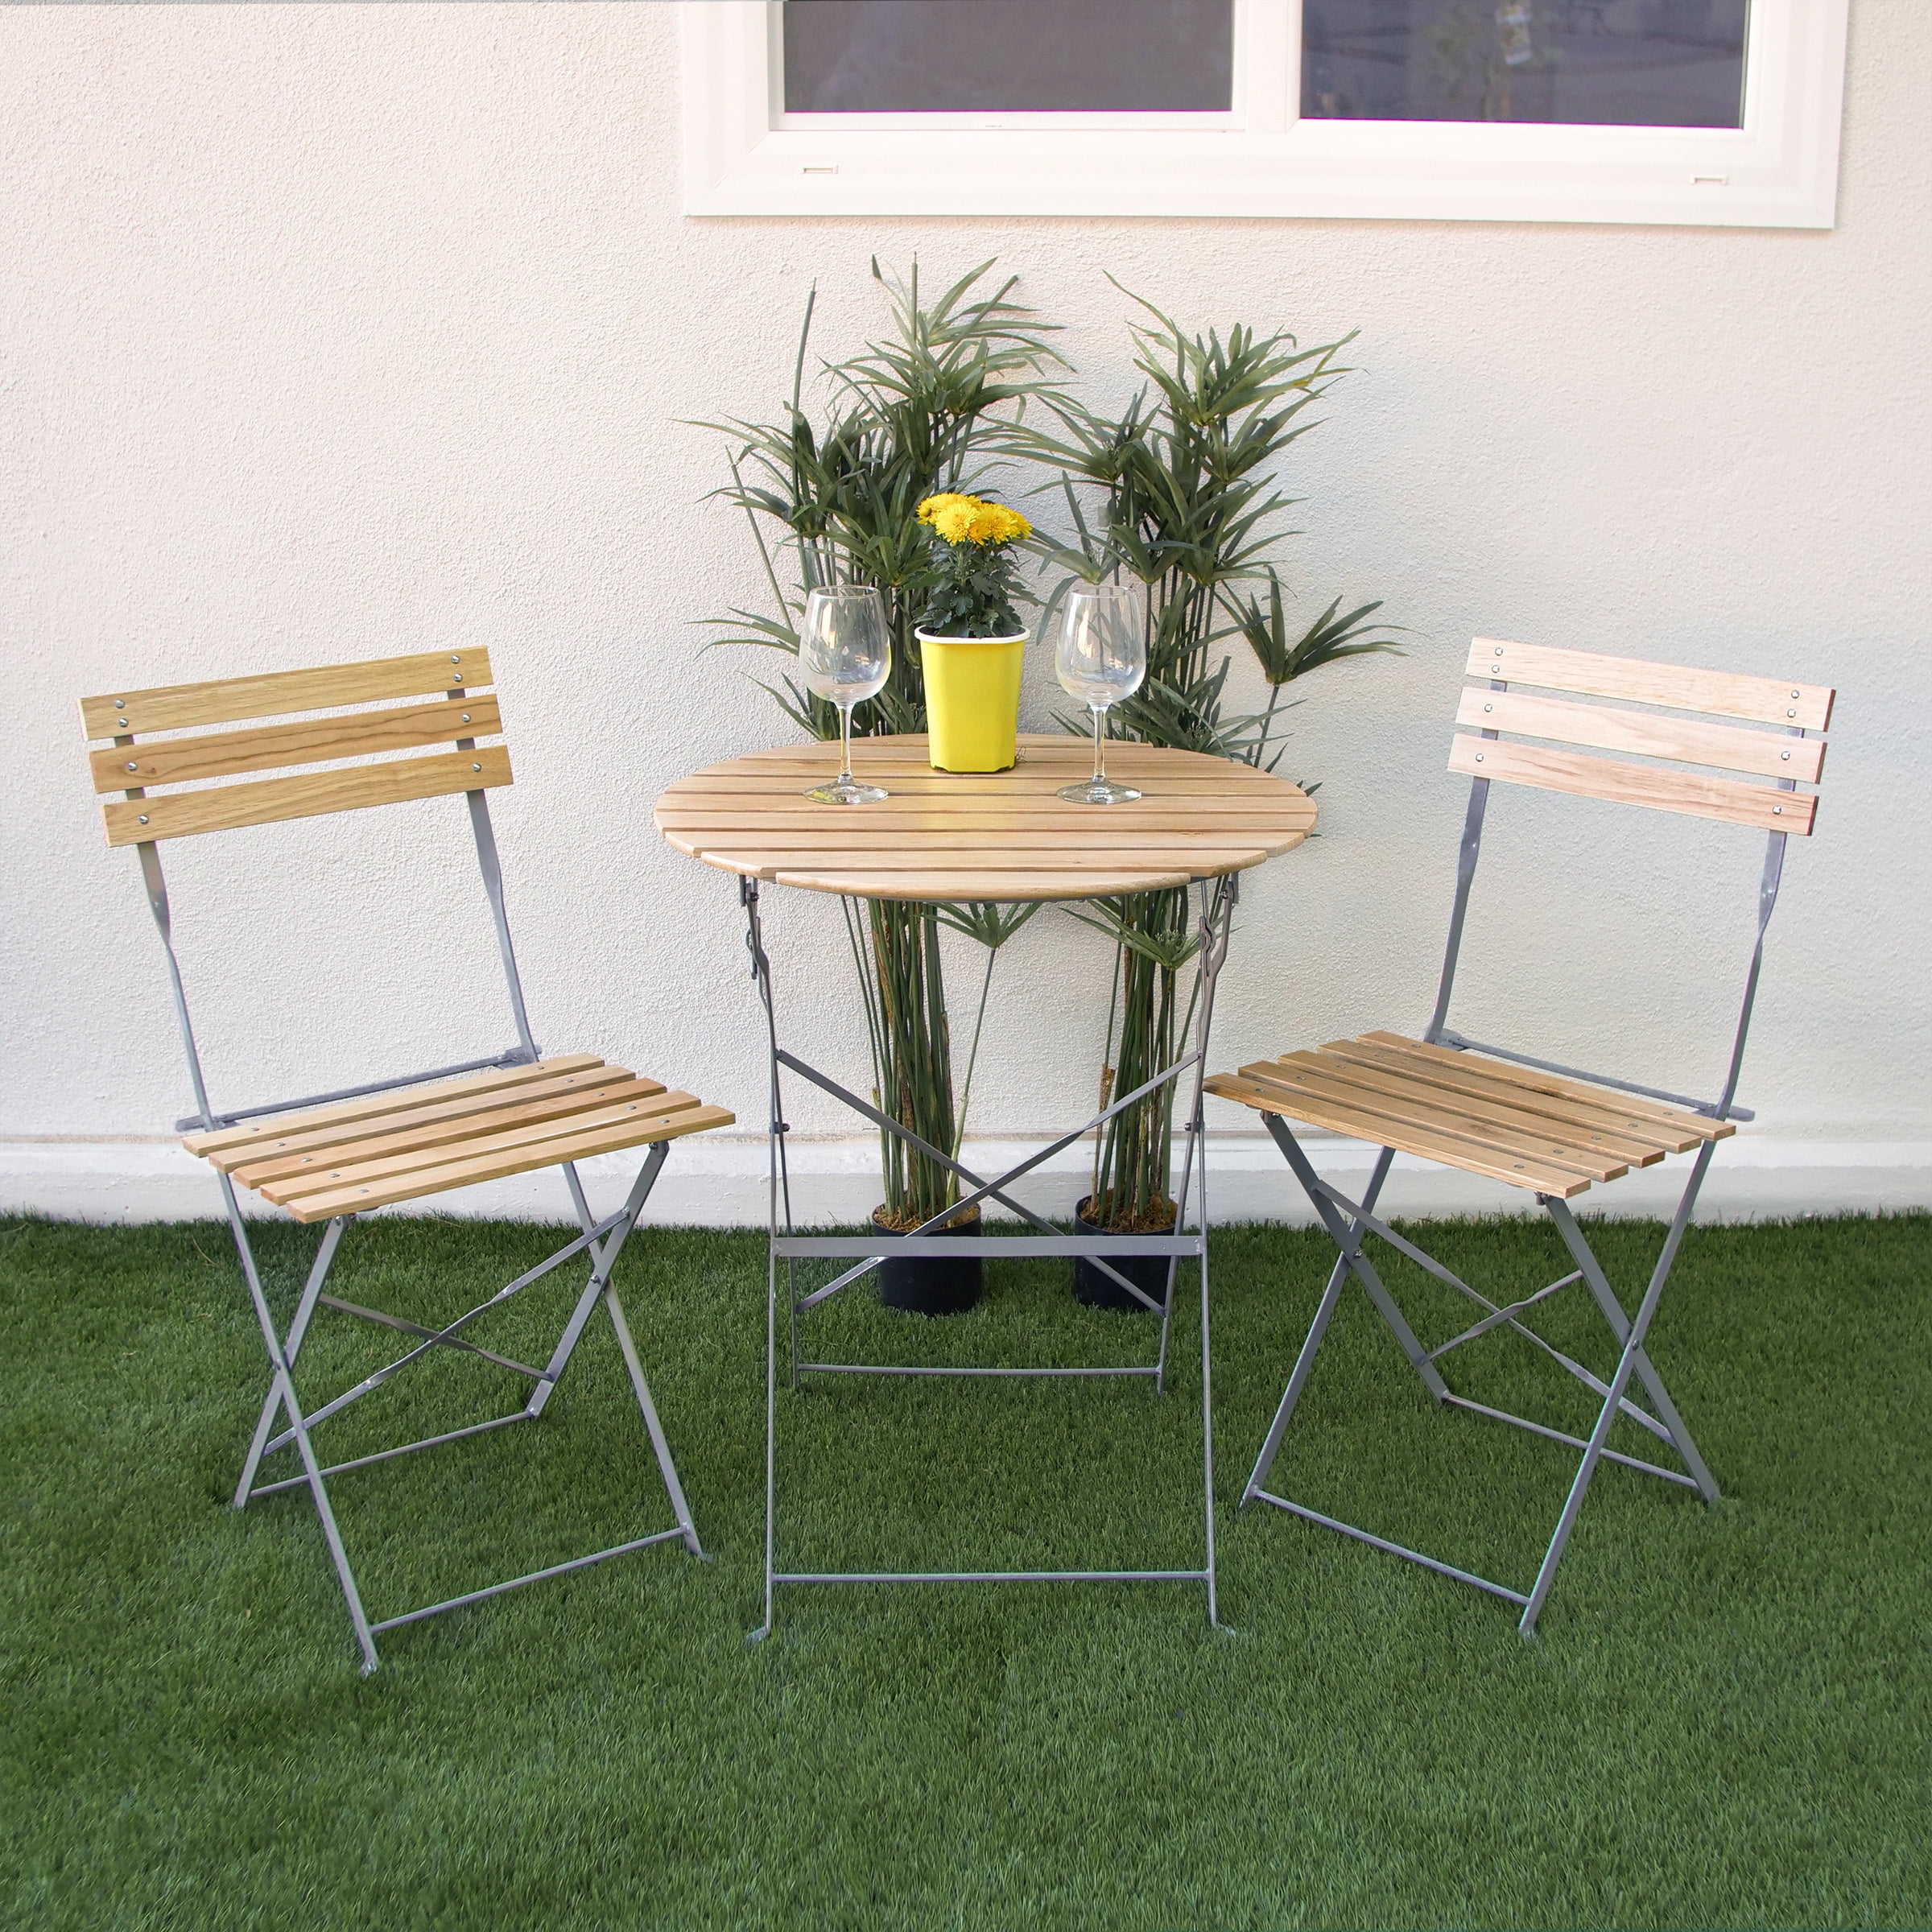 Yard Alpine Corporation 3-Piece Floral Metal Bistro Set Outdoor Conversation Set for Patio Garden White 